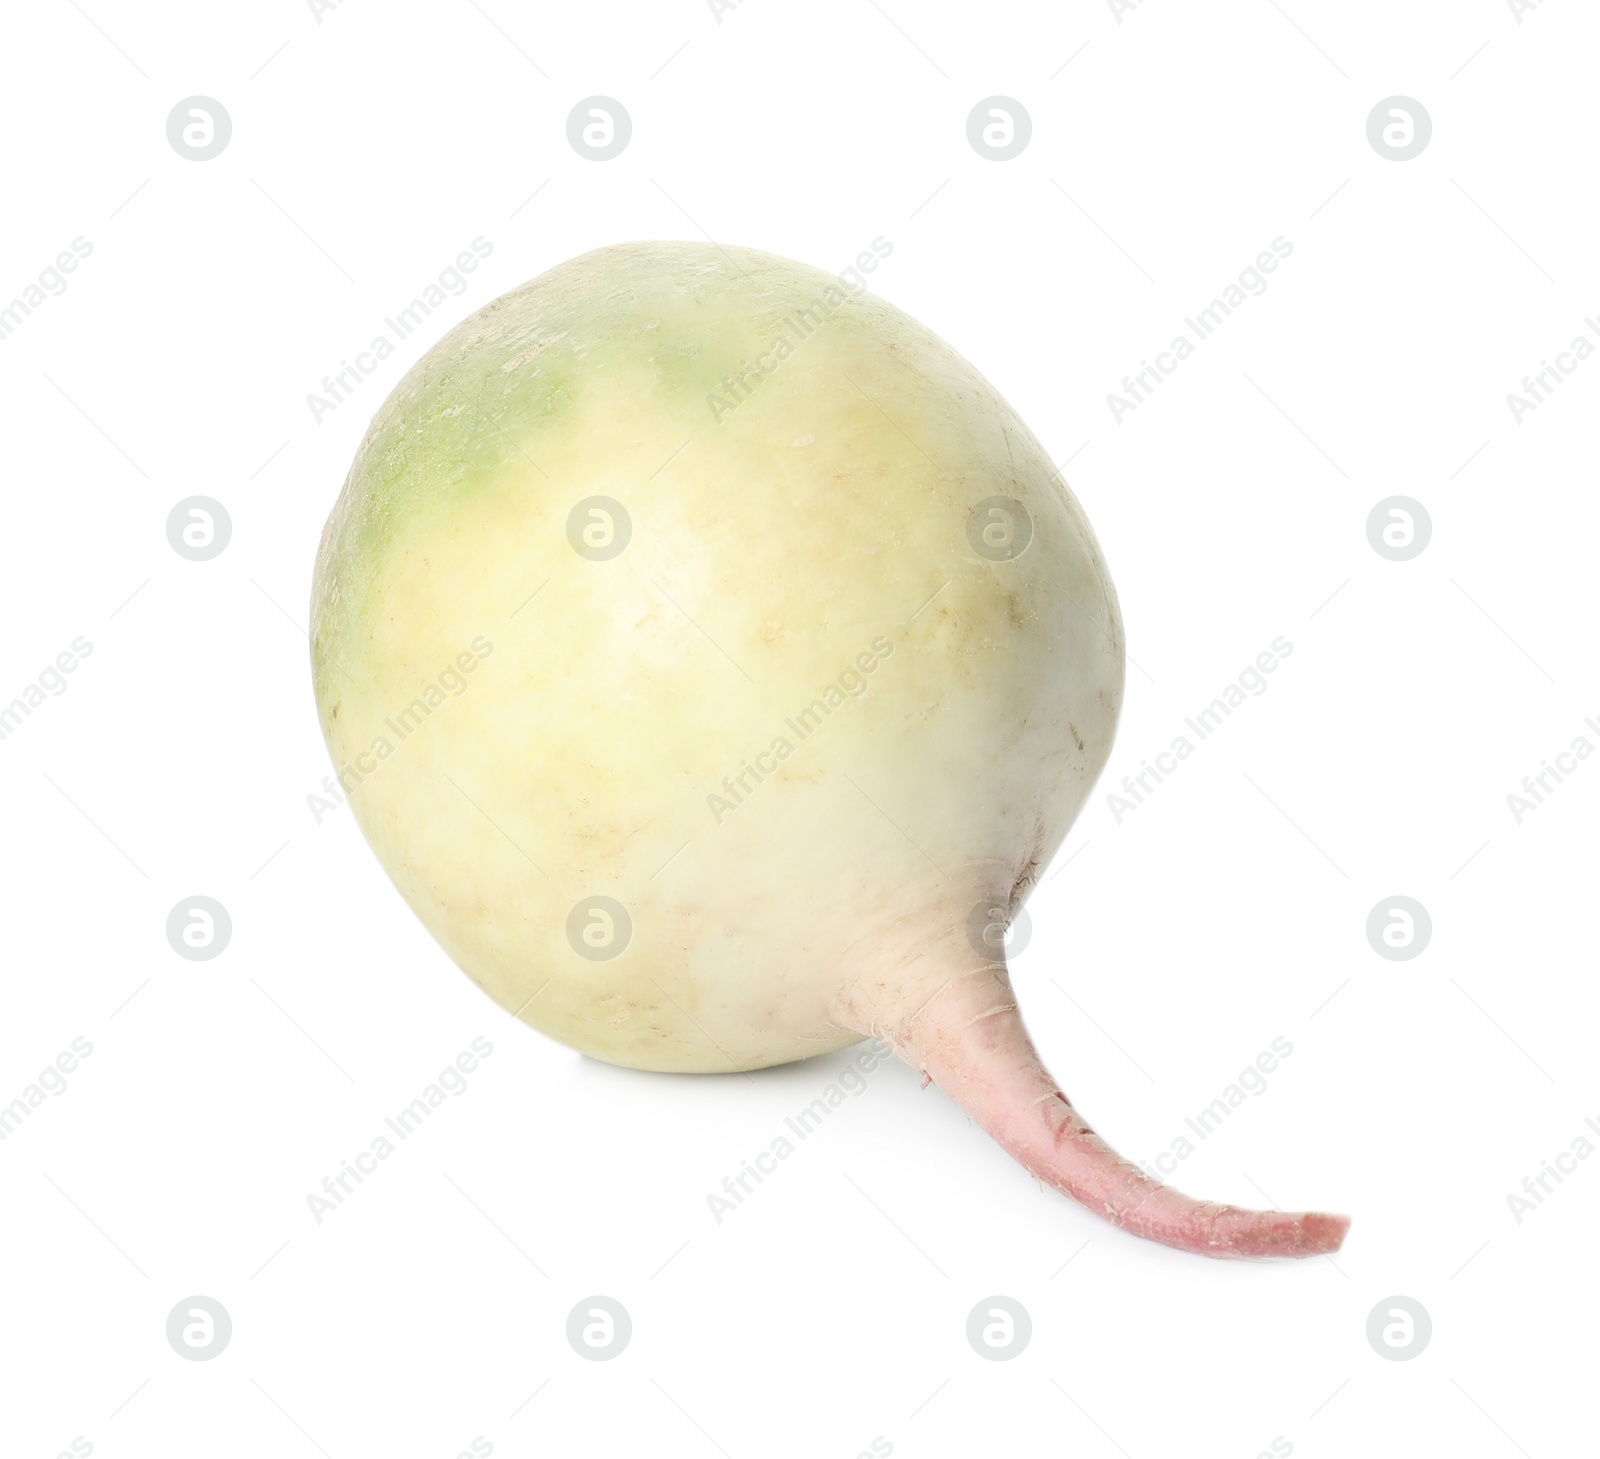 Photo of Whole fresh ripe turnip on white background